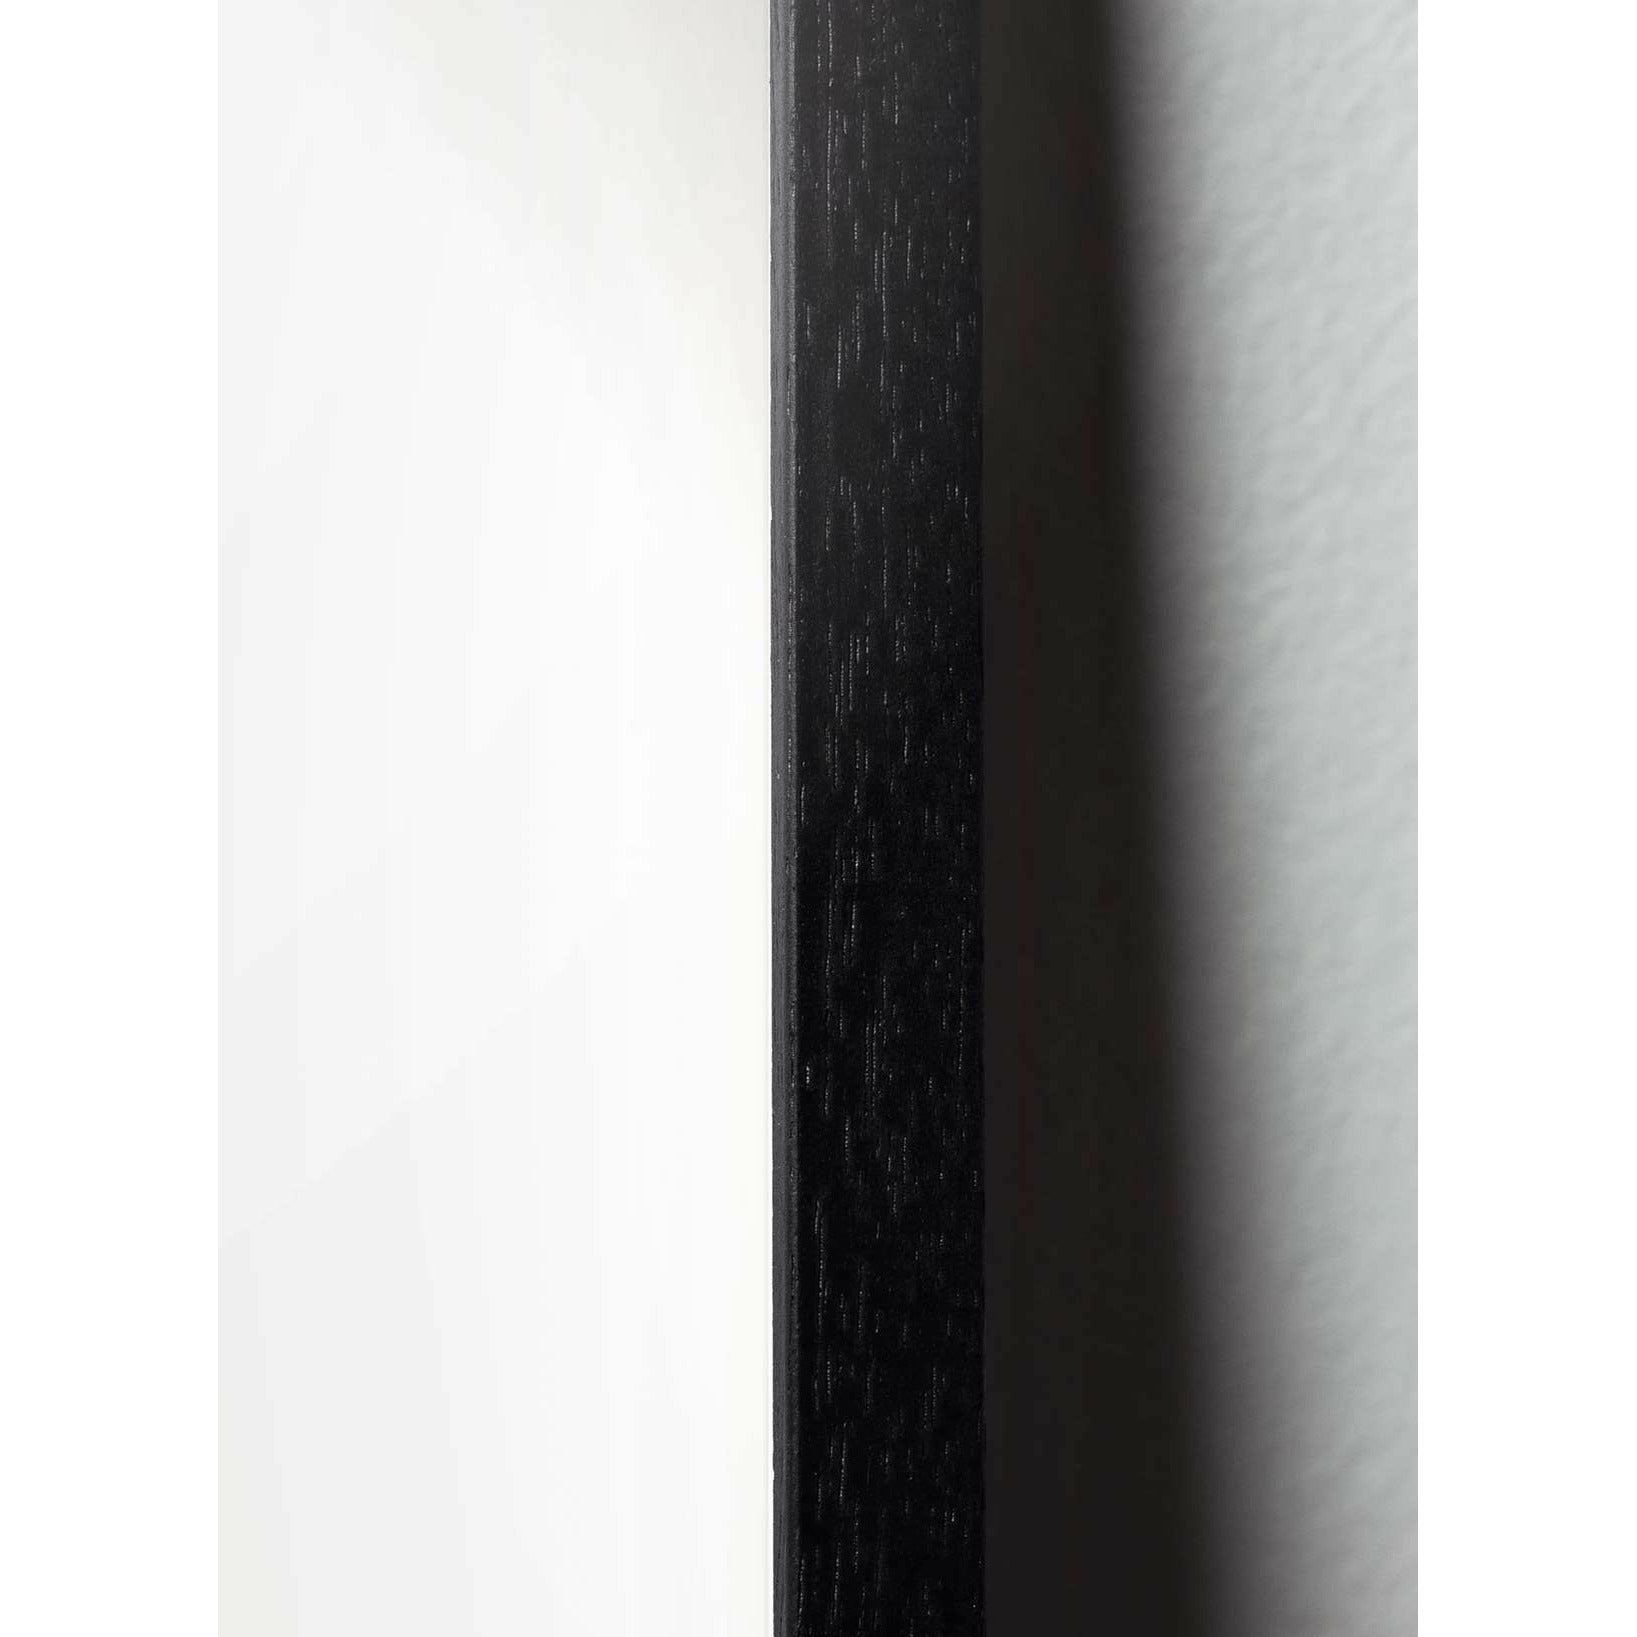 Brainchild Teddybeerontwerppictogram Poster, frame gemaakt van zwart gelakt hout a5, grijs